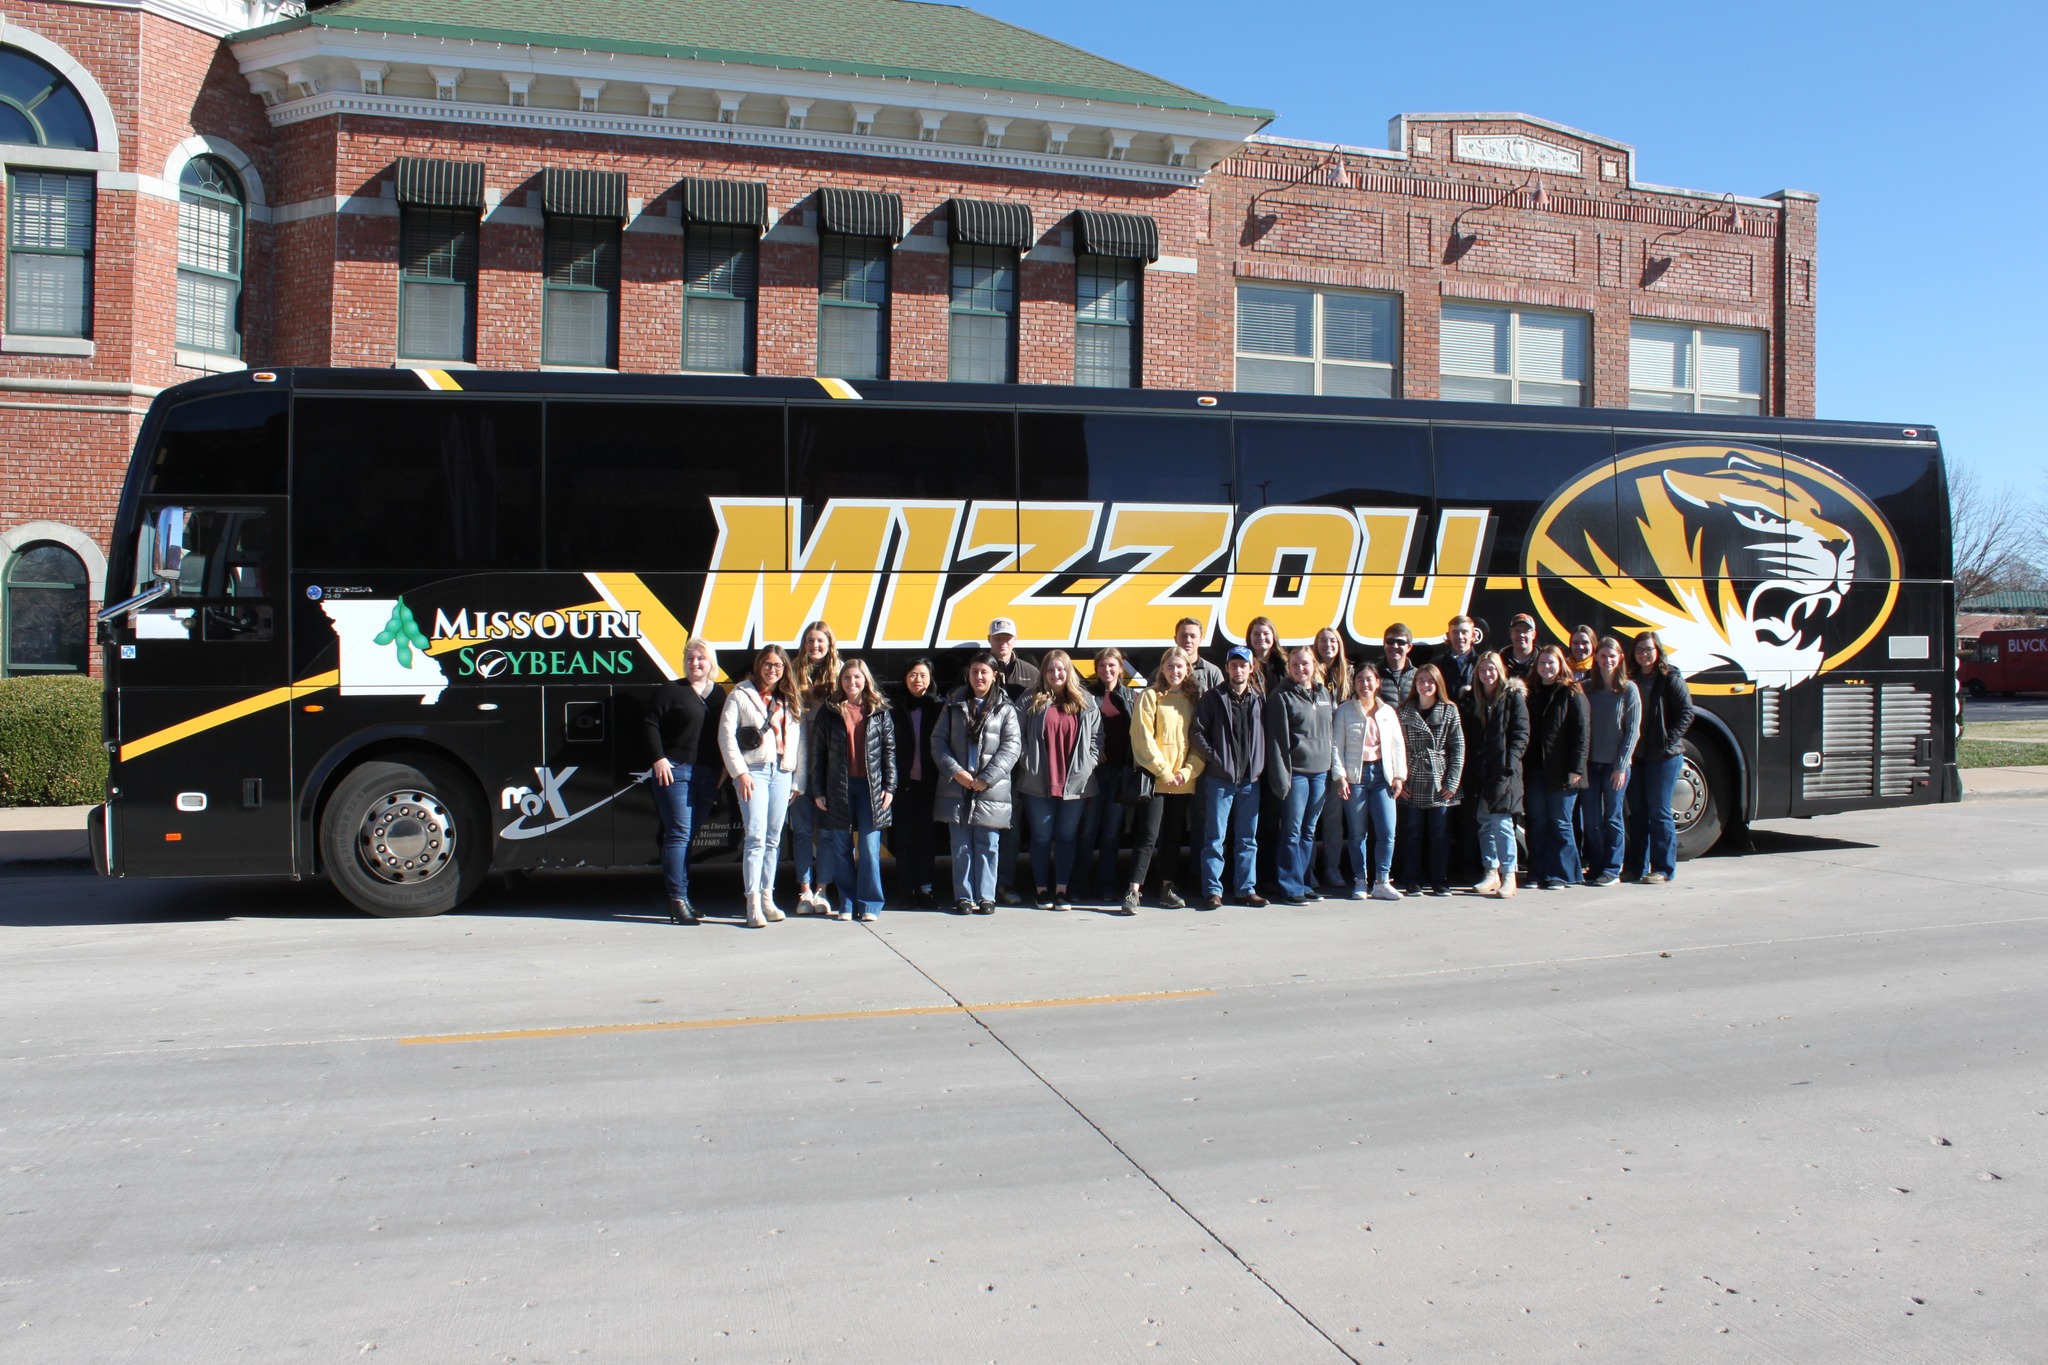 Dickinson Scholars by Mizzou bus